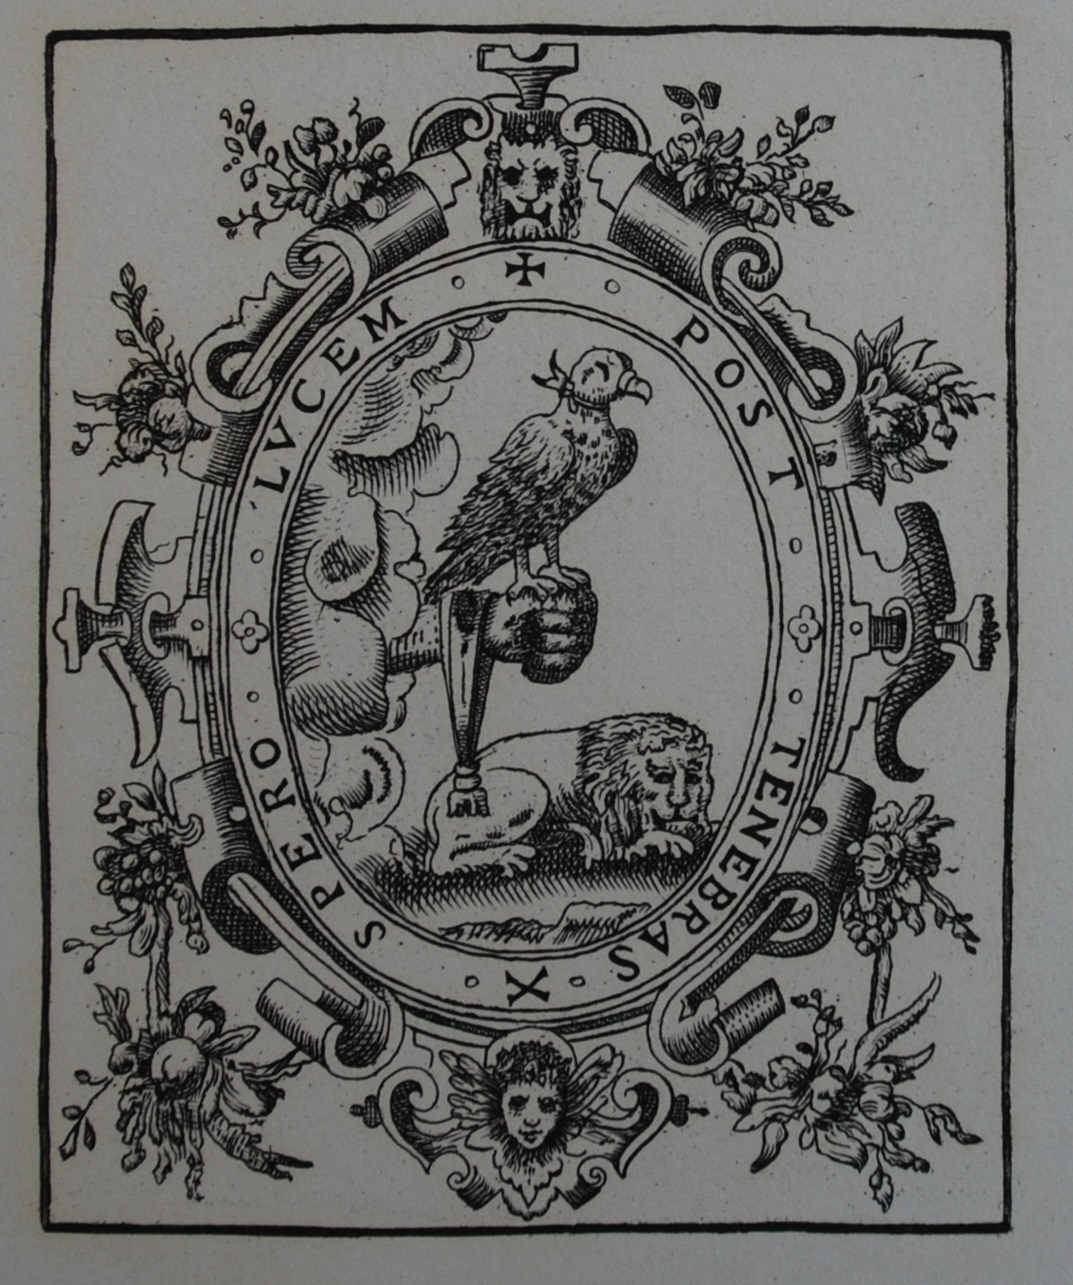 Printer's device from facsimile of La primera edicion del Ingenioso hidalgo Don Quijote de la Mancha